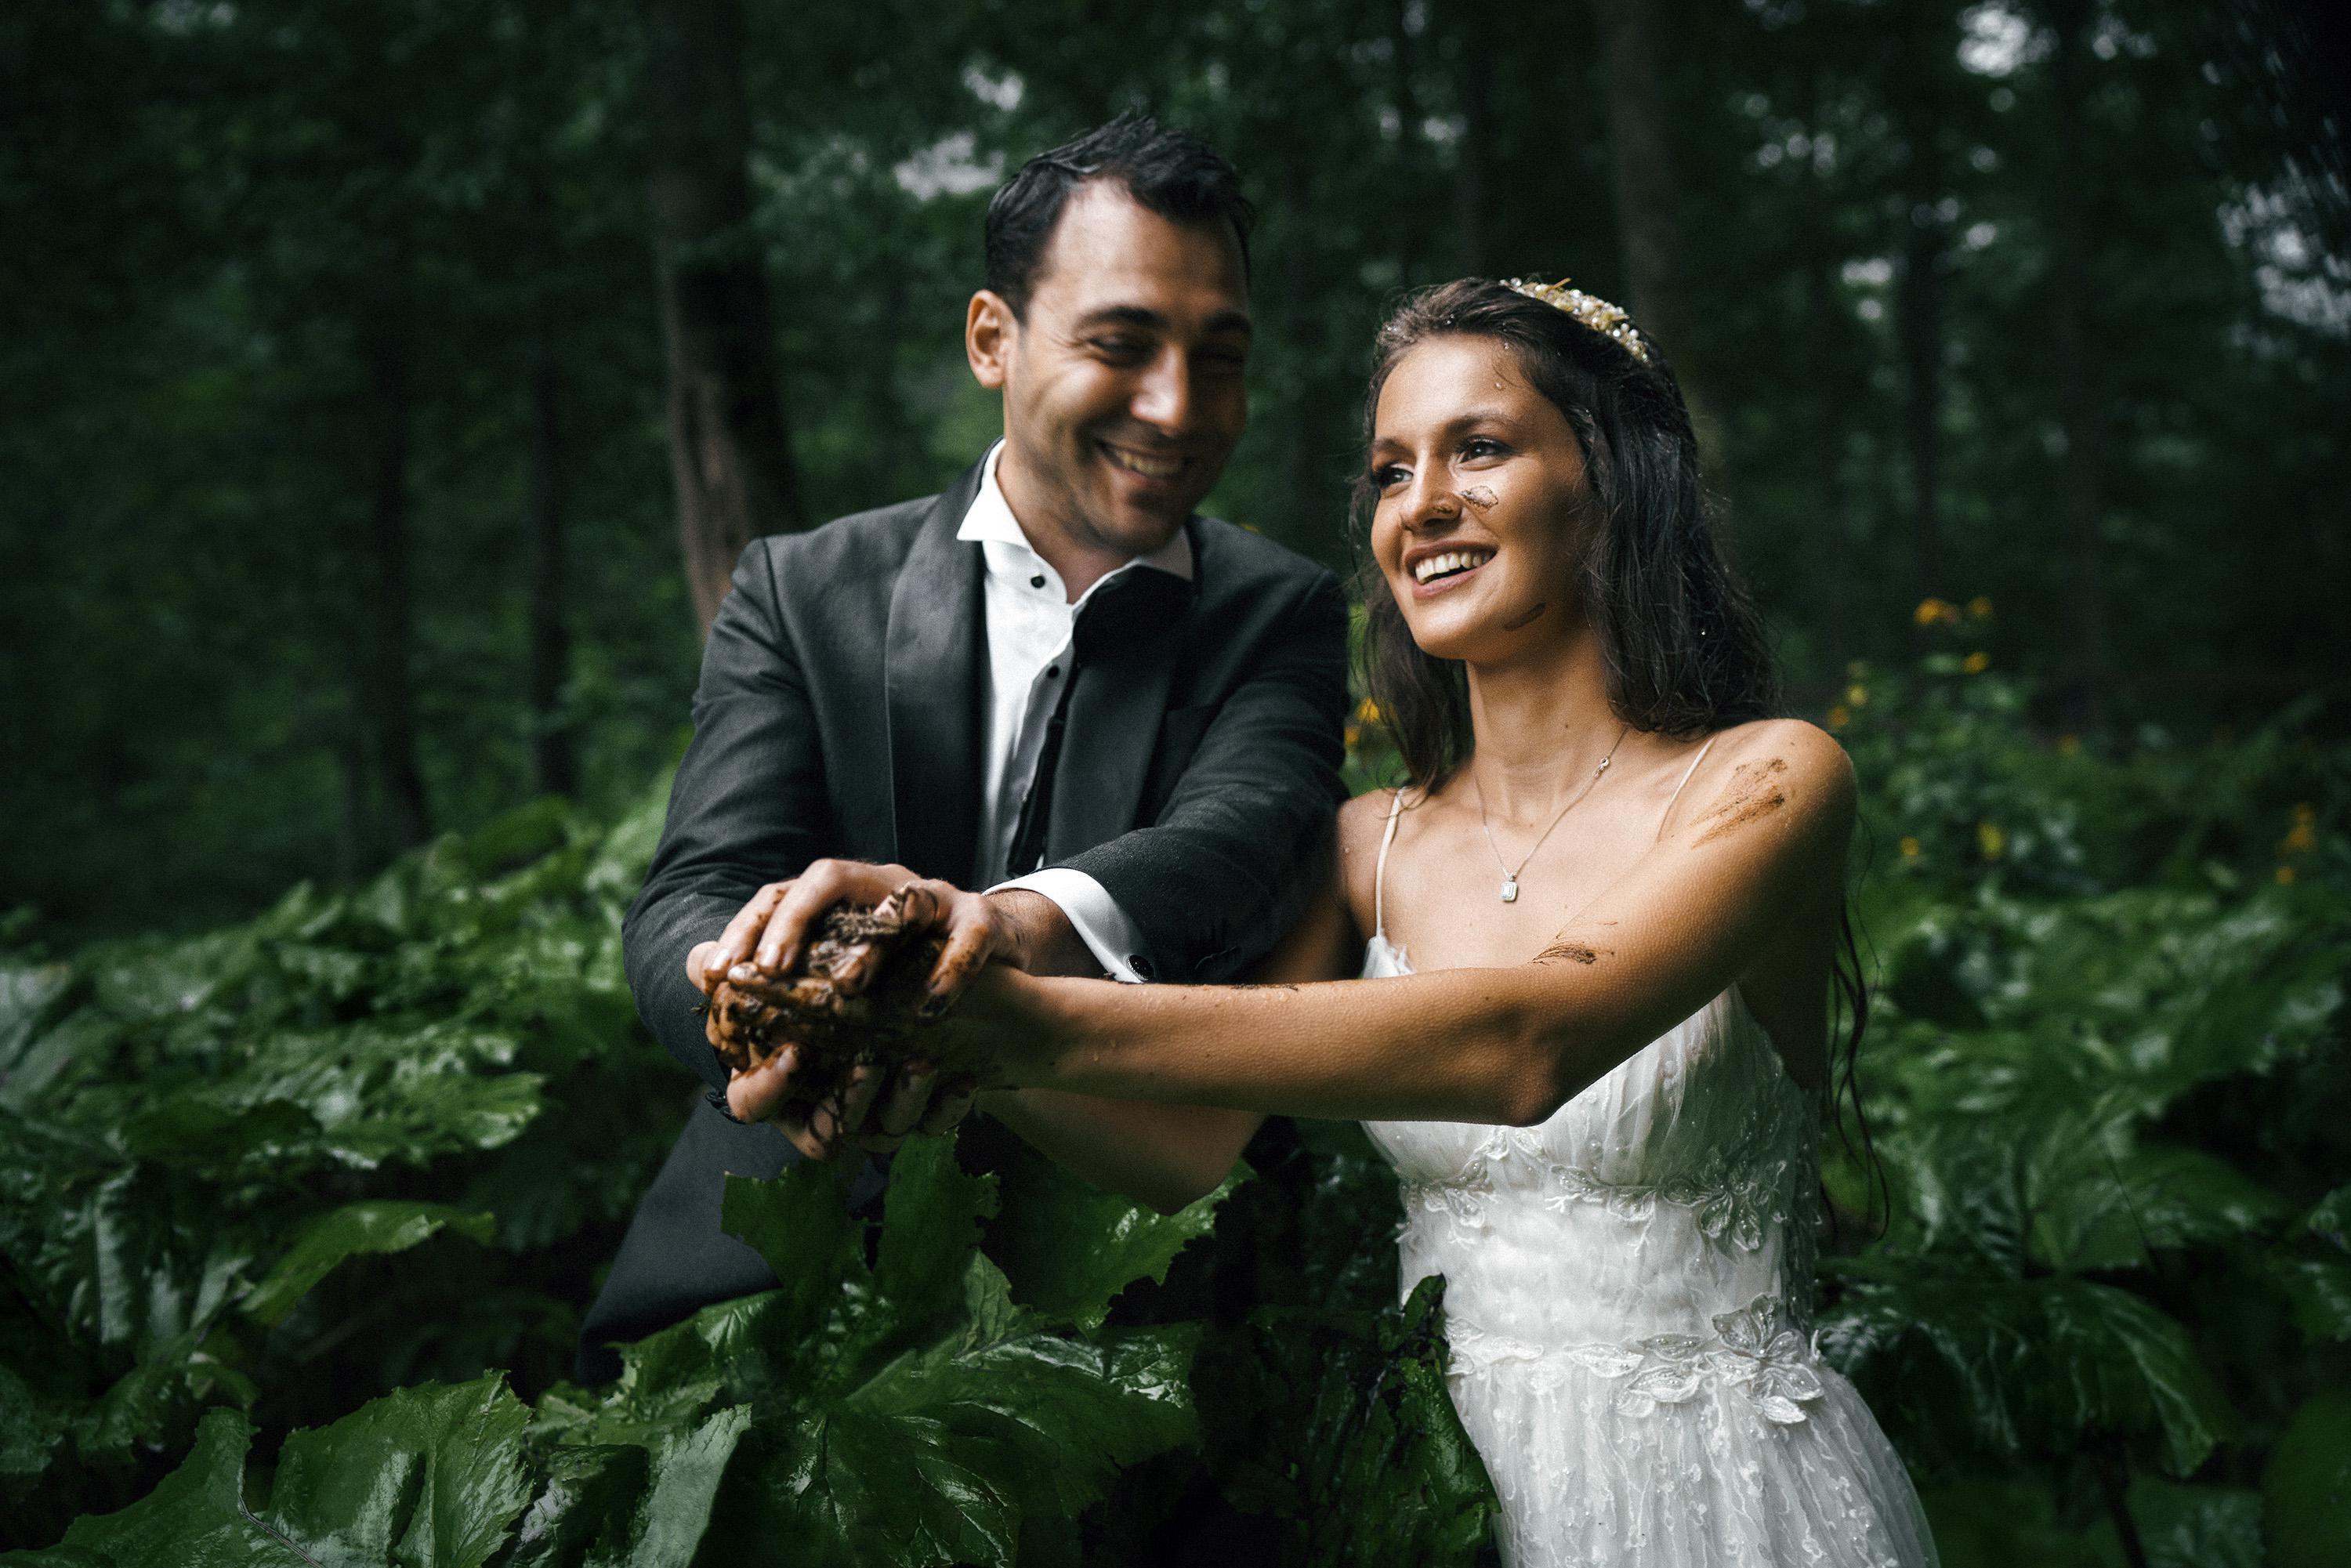 Doğada düğün fotoğrafları çektiren çift, yağmurun azizliğine uğradı